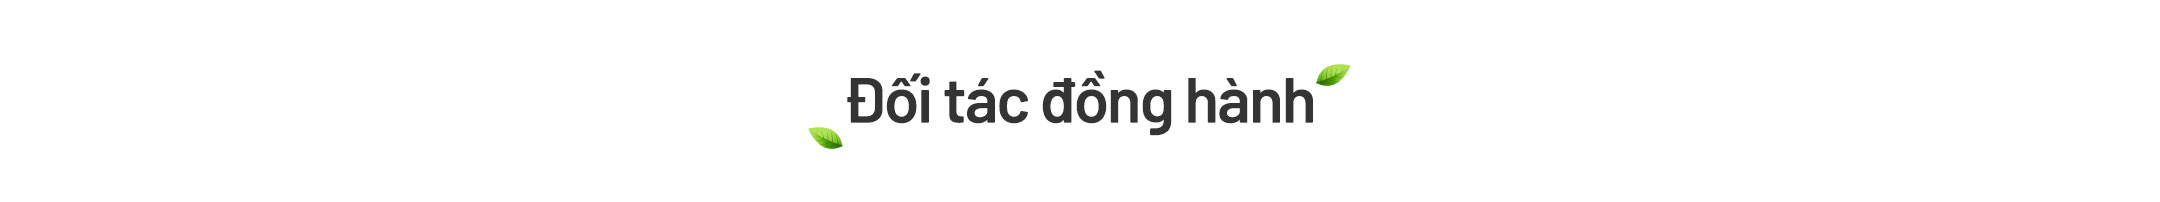 Text1 Doi tac dong hanh